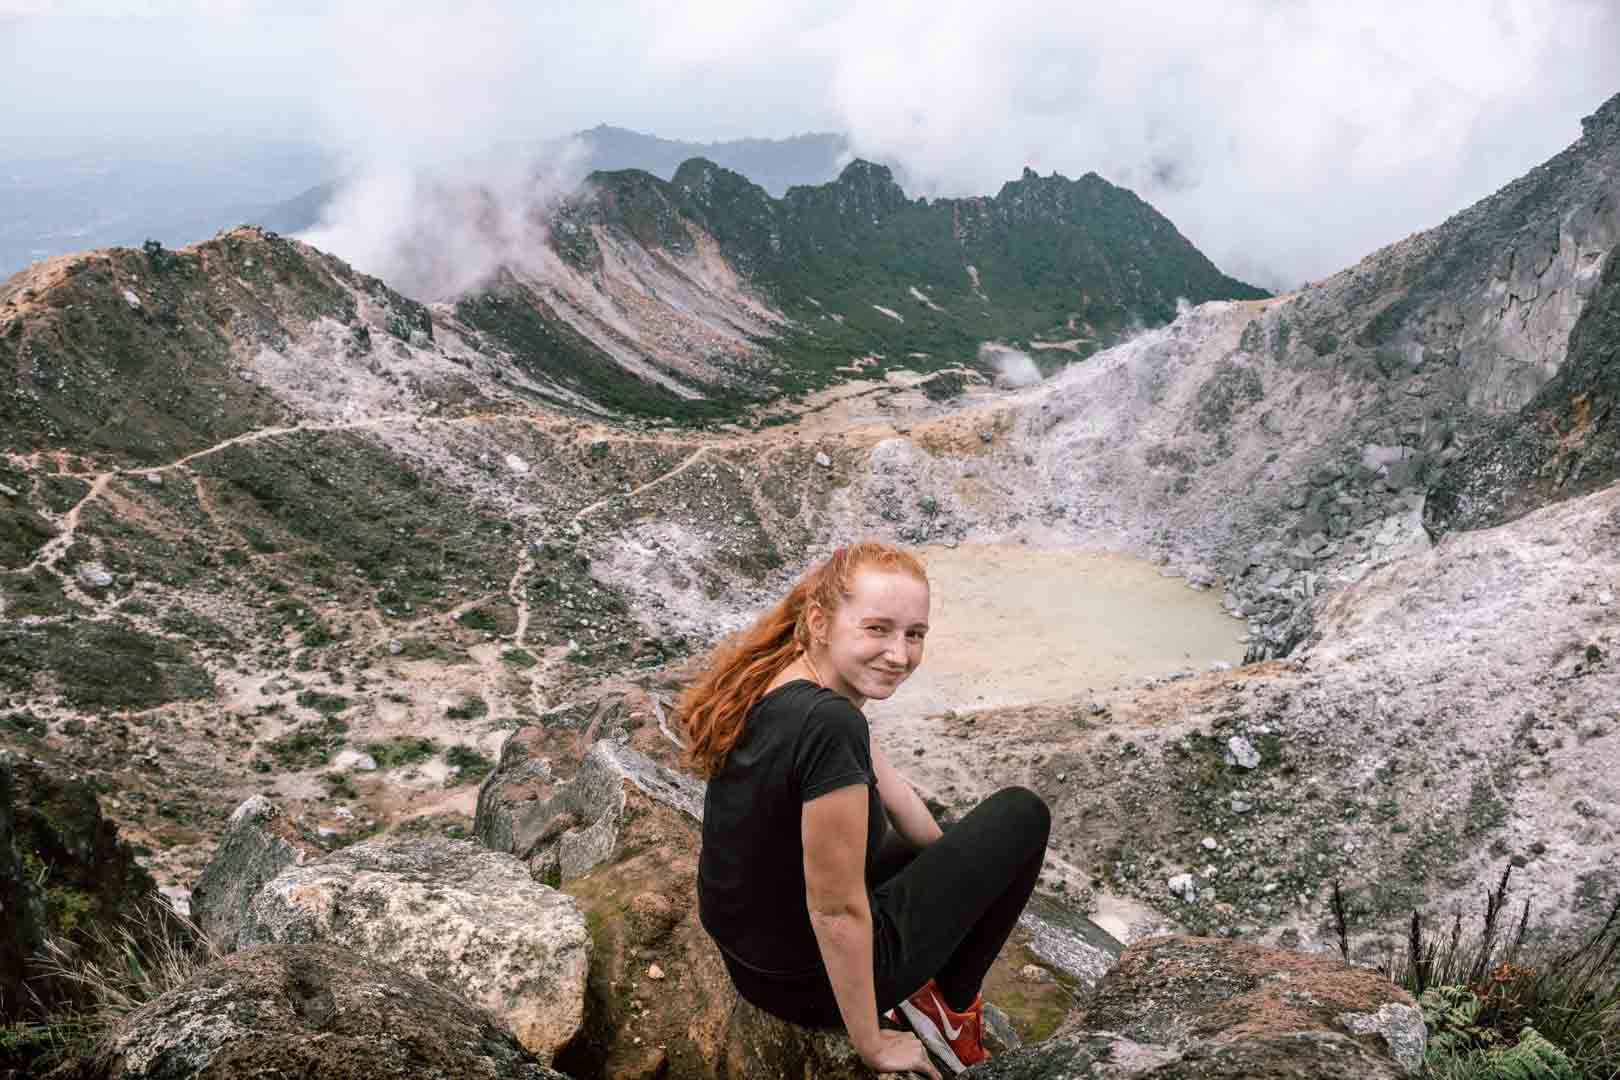 Hiking Mount Sibayak in Sumatra